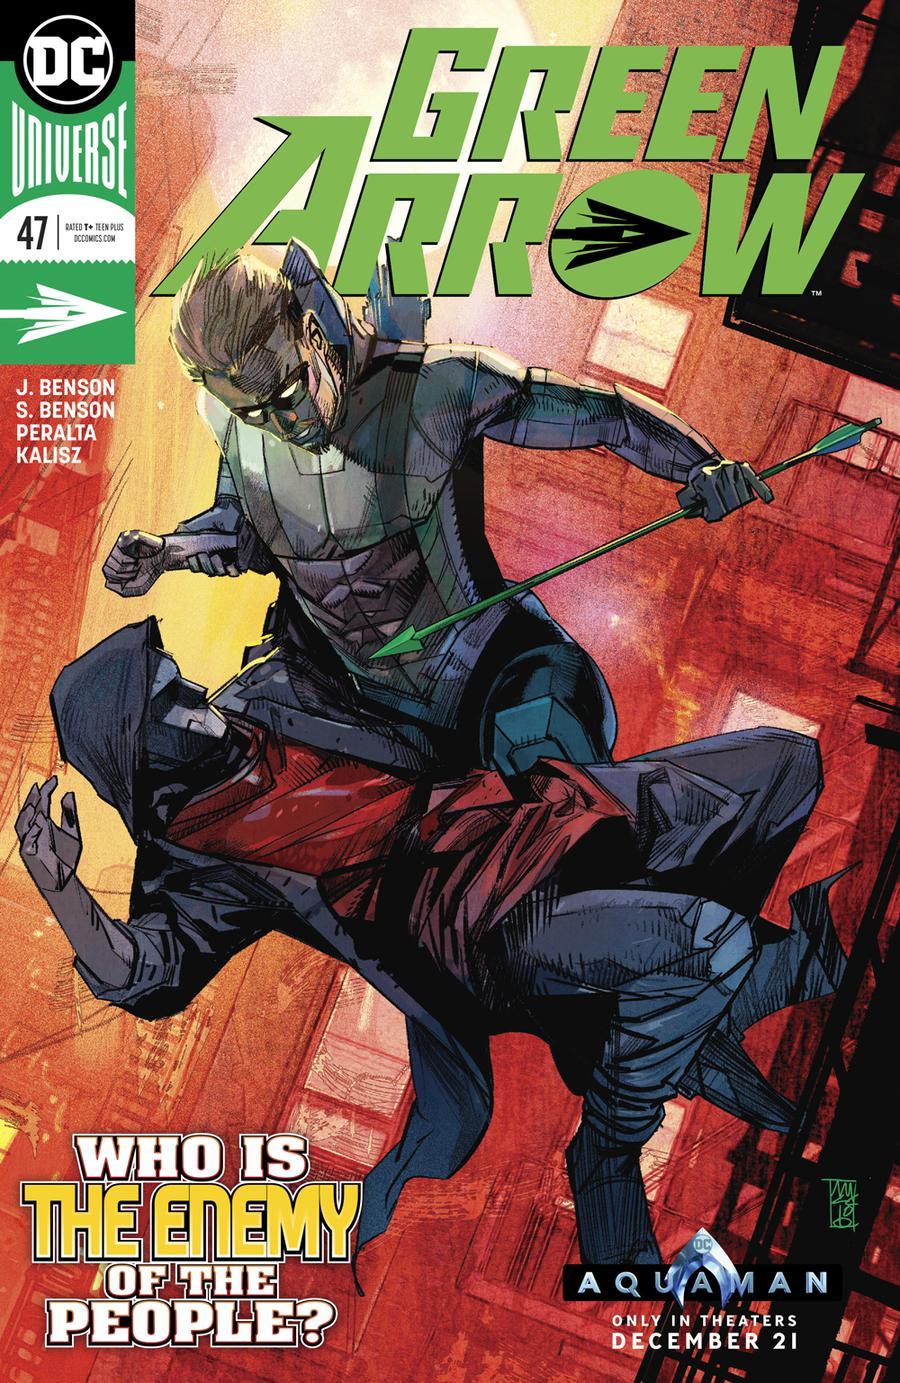 Green Arrow Vol. 7 #47